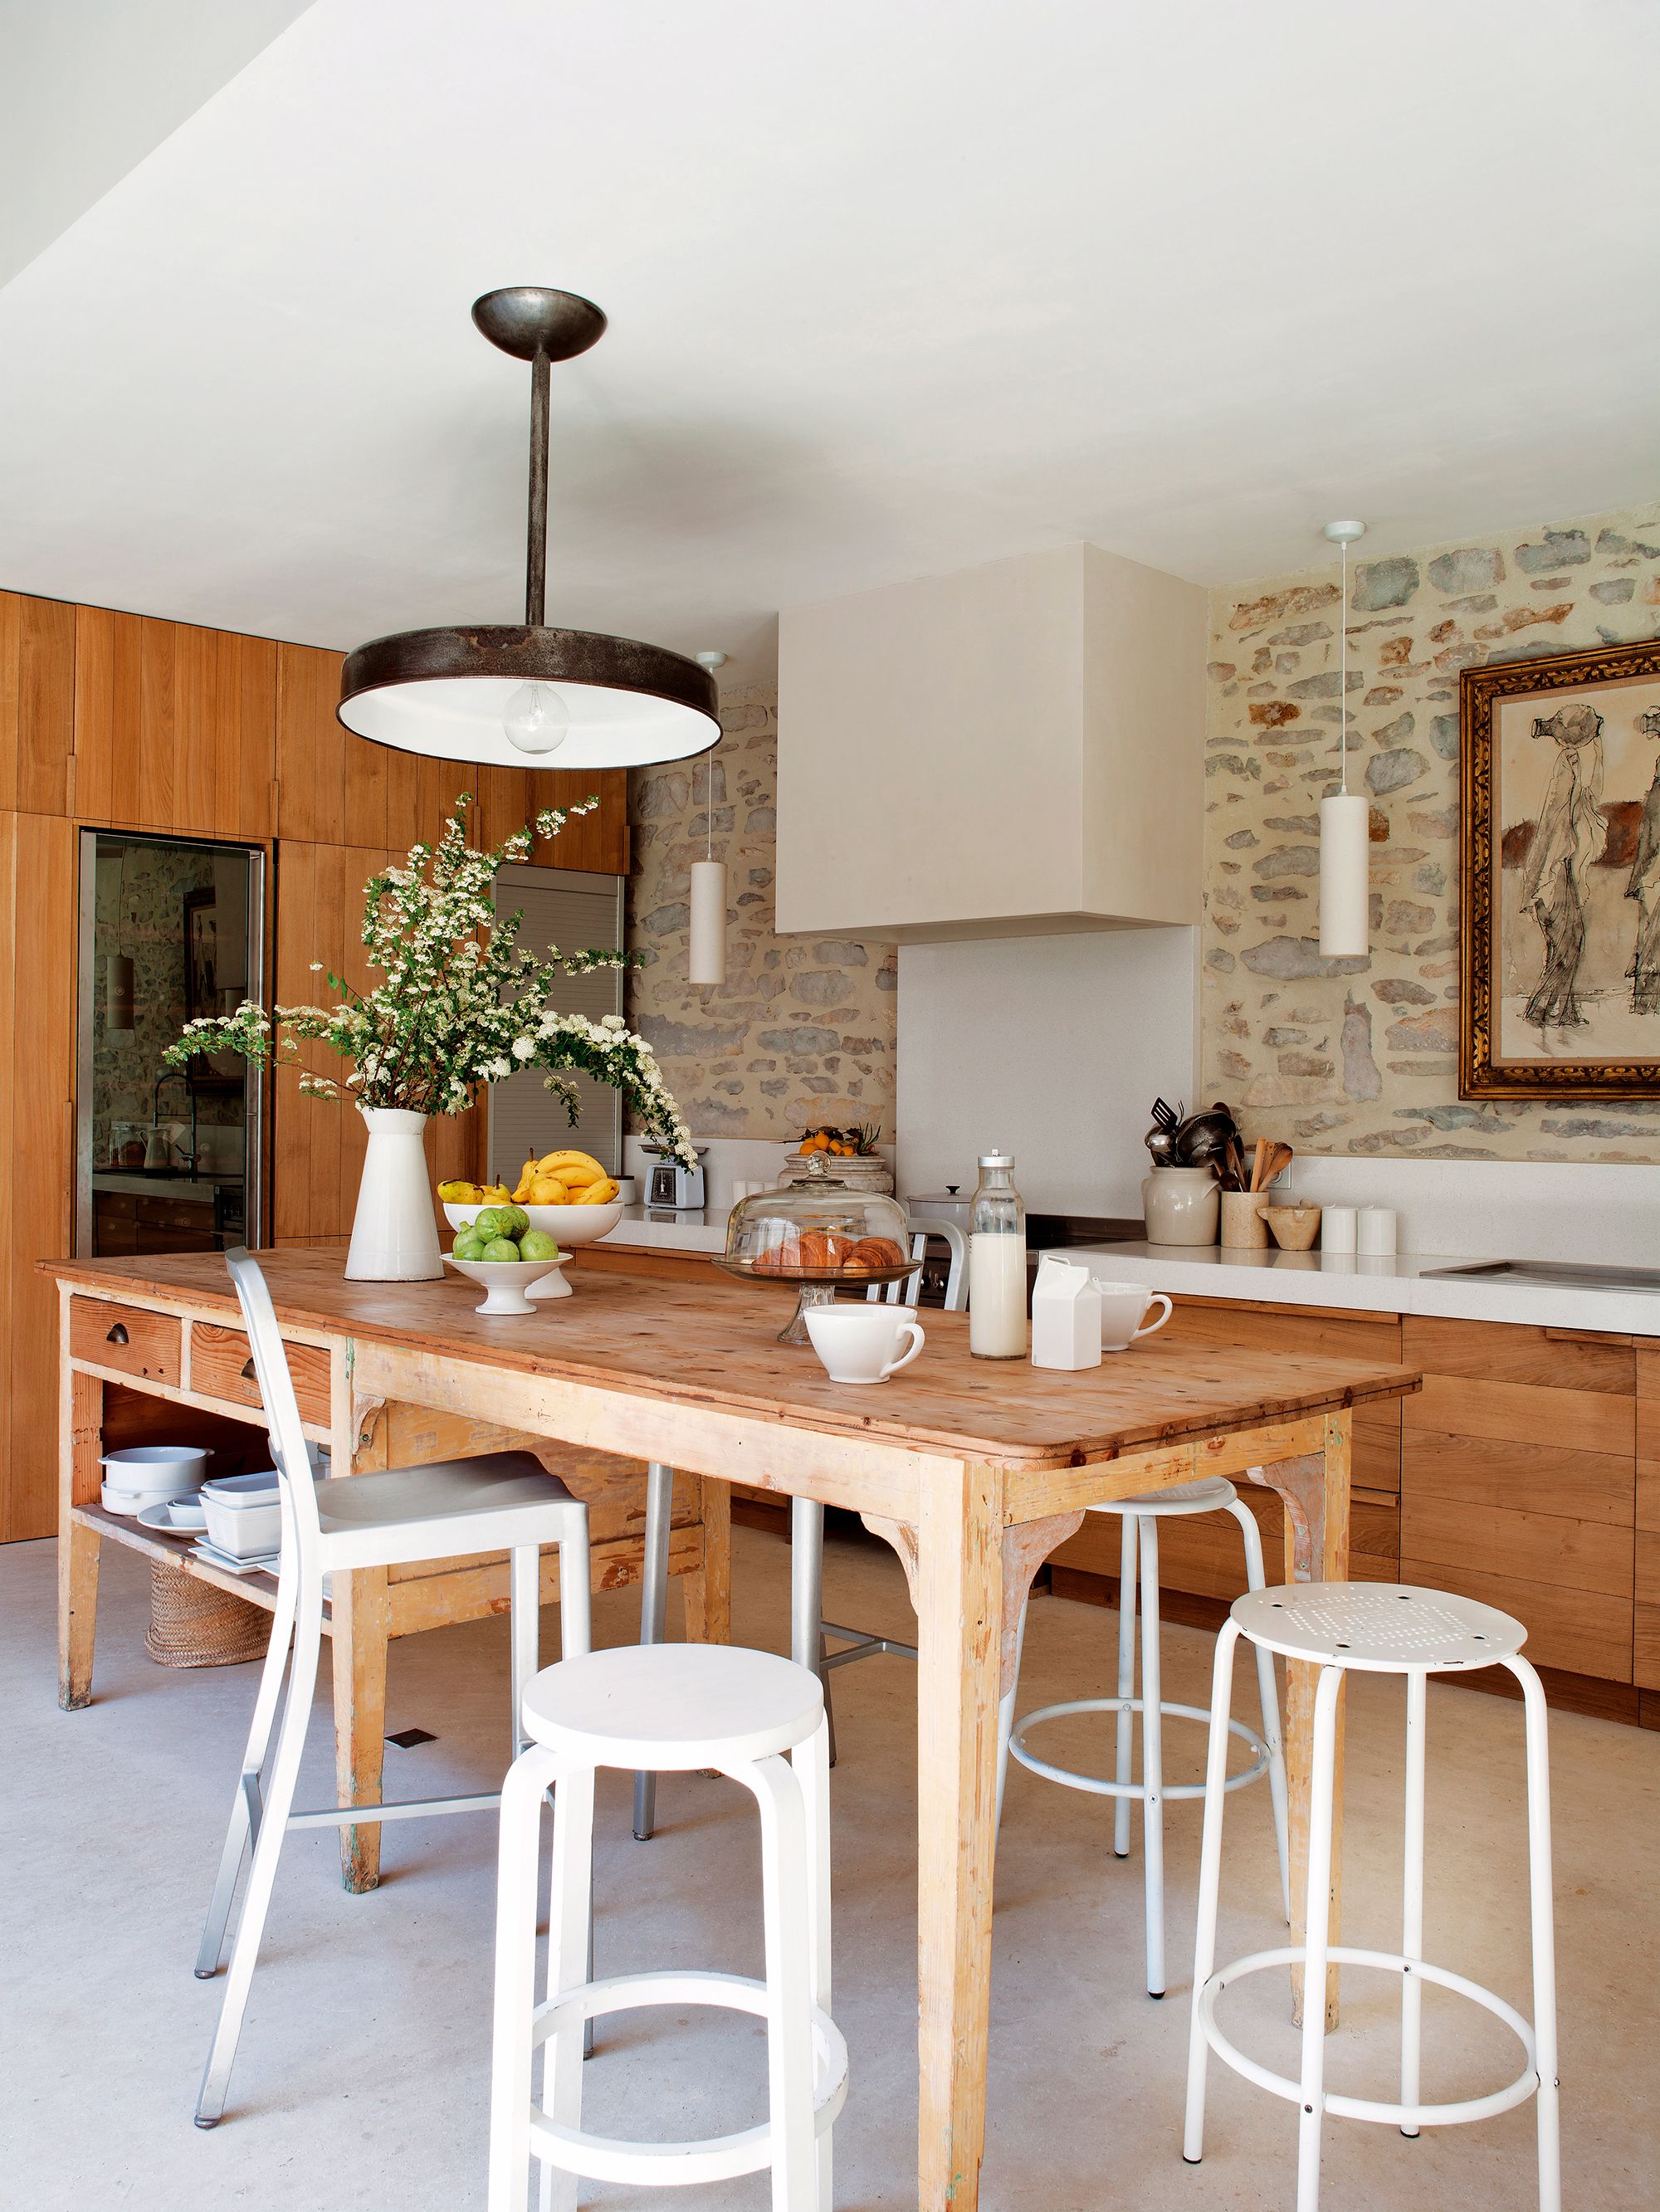 isla cocina con barra madera - Buscar con Google  Kitchen bar design,  Modern kitchen island, Modern kitchen bar